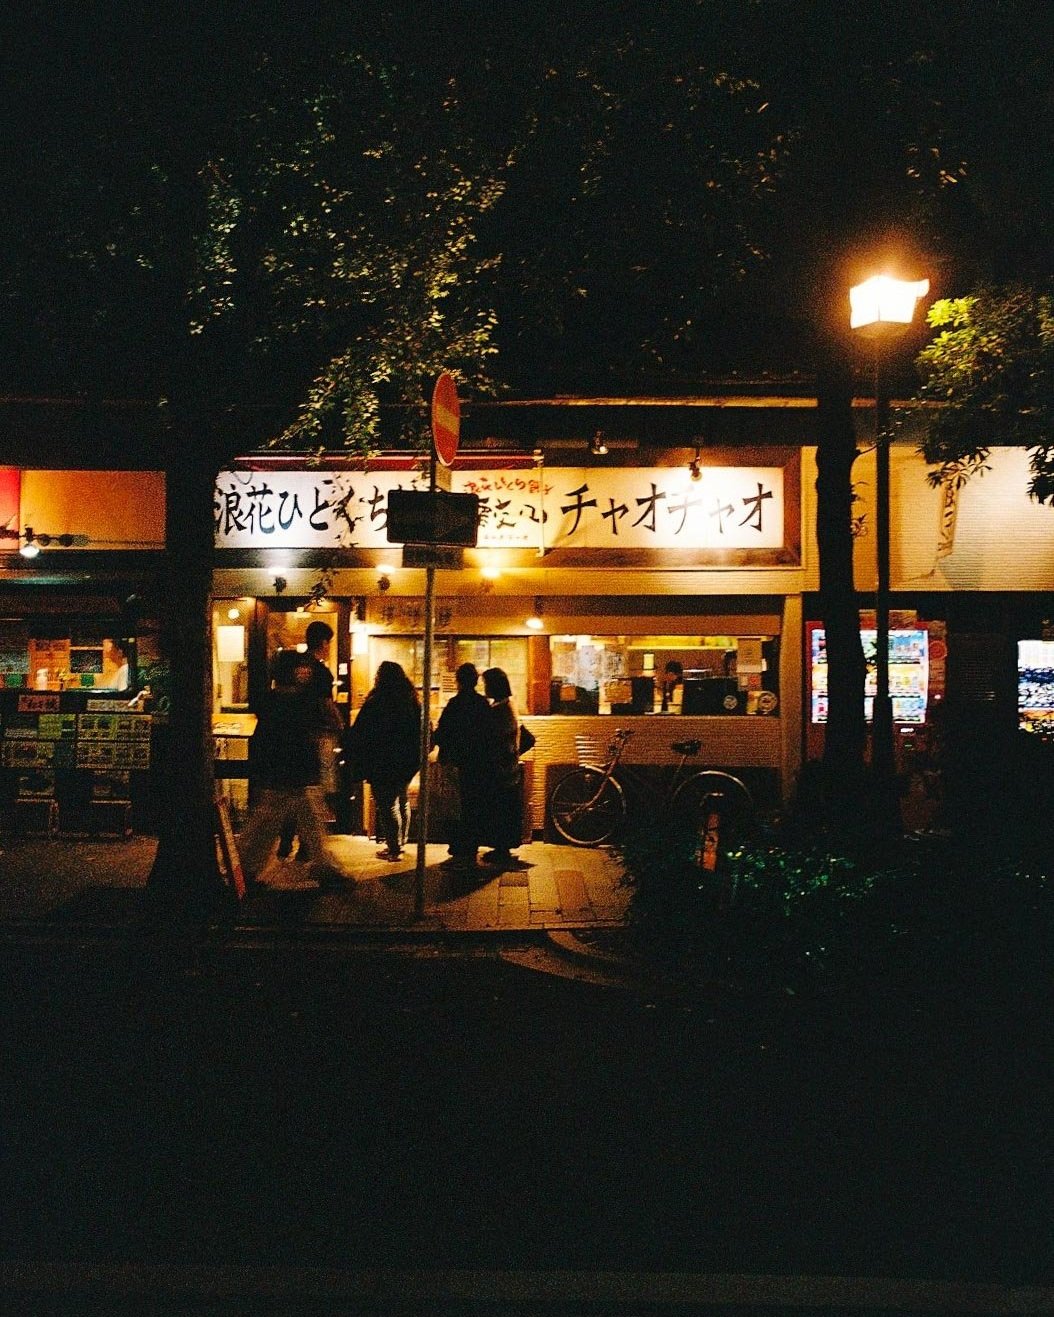 The award winning Gyoza shop in Kyoto, Japan